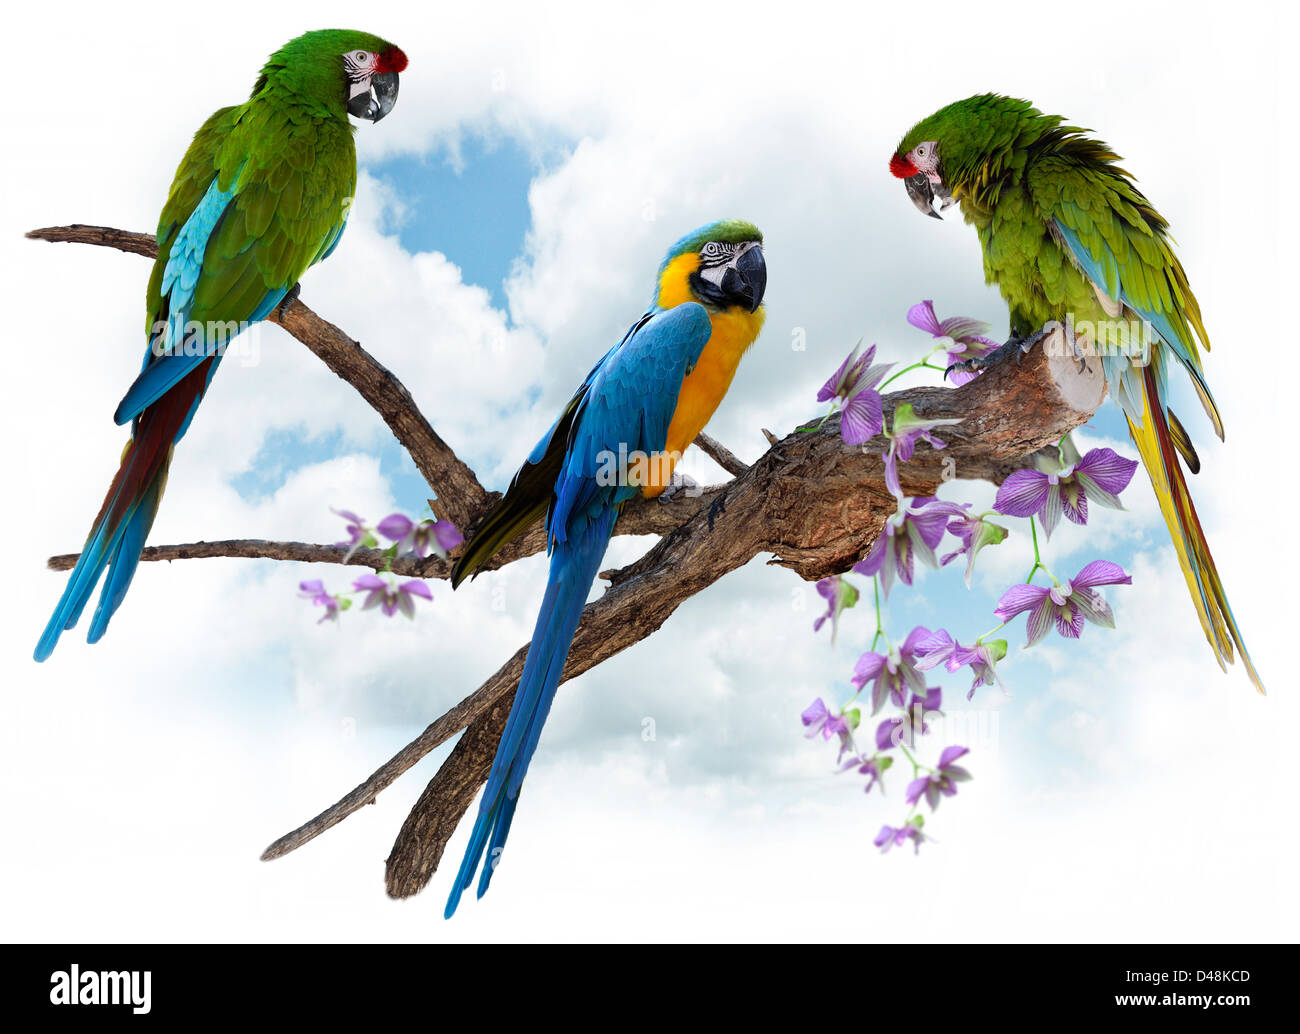 Loros guacamayos coloridos donde se posan sobre una gran rama Foto de stock